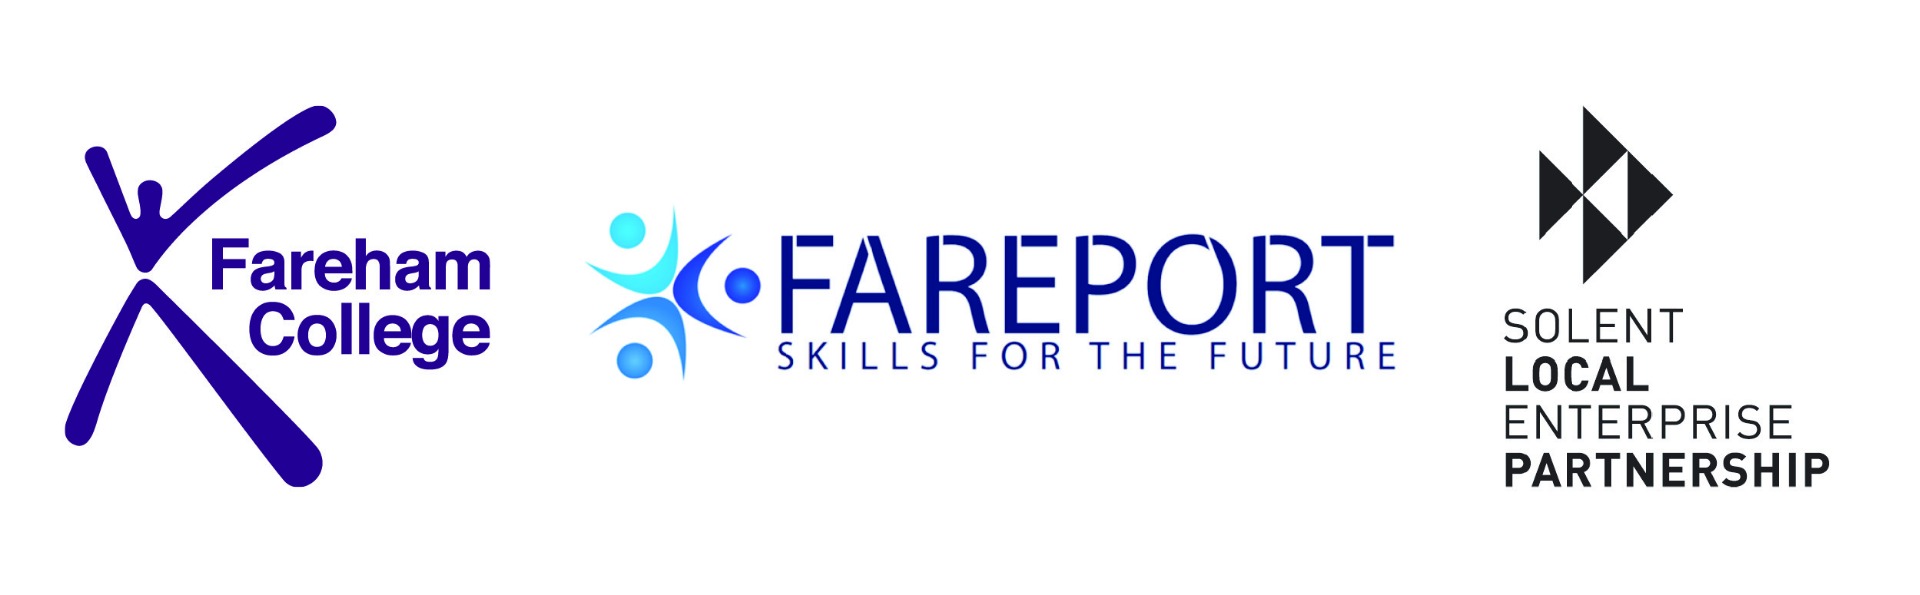 Fareham College, Fareport Training and Solent LEP logos